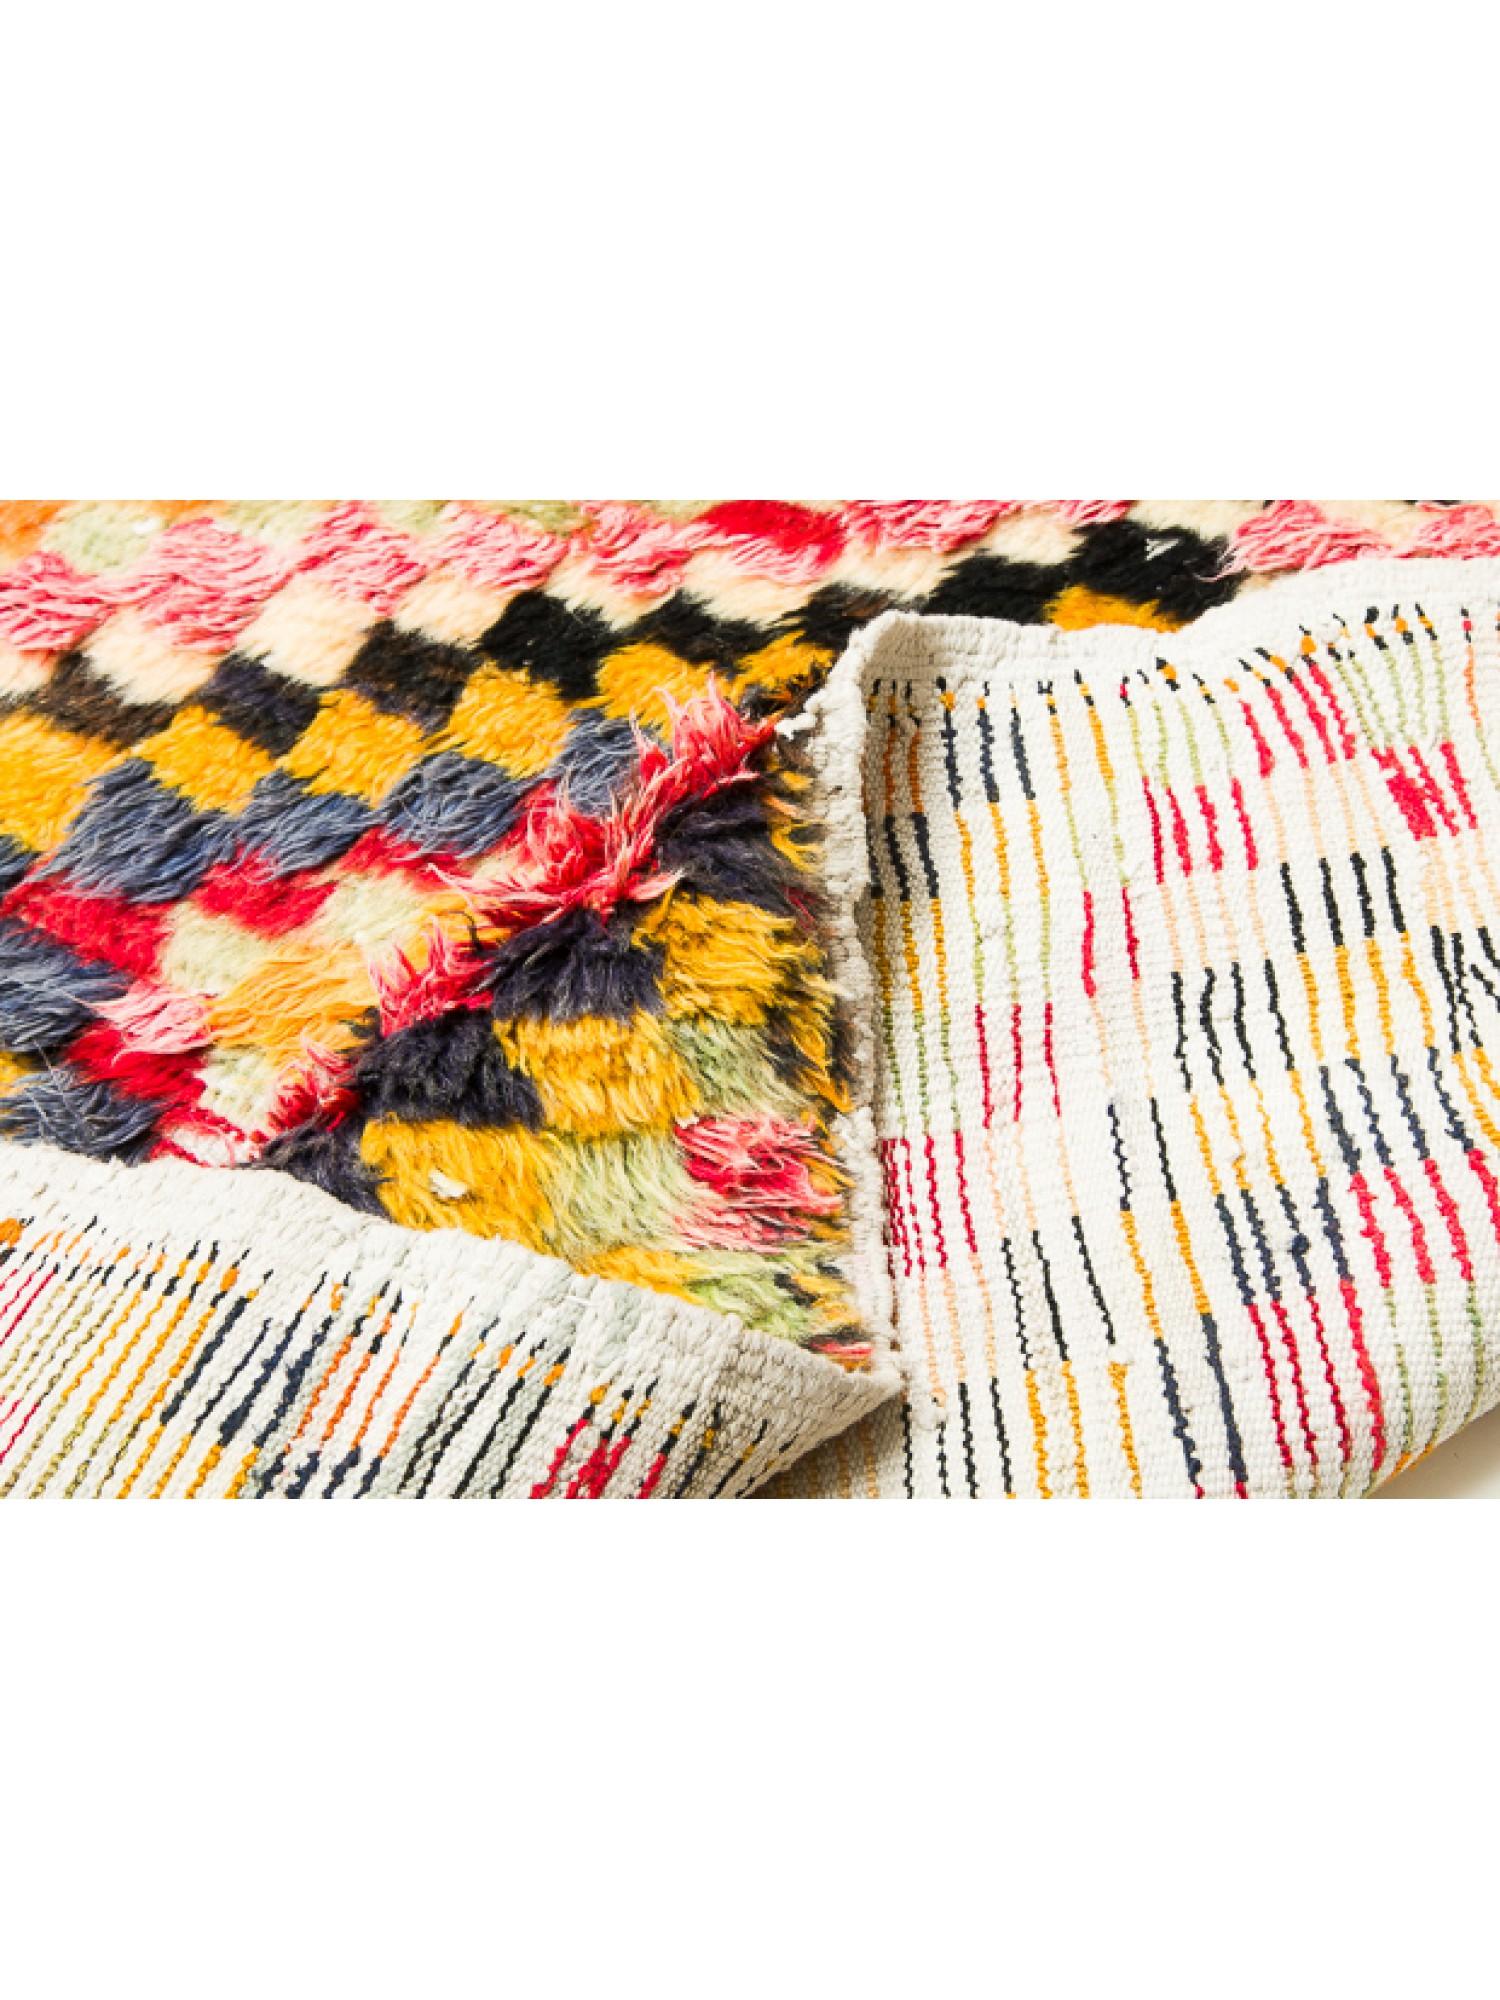 Il s'agit d'un tapis Vintage Tulu Runner d'Anatolie centrale, de la région de Konya, avec des poils longs en laine hirsute, en bon état, et une belle composition de couleurs.

Les tapis Tulu d'Anatolie centrale, également appelés tapis Tulu ou